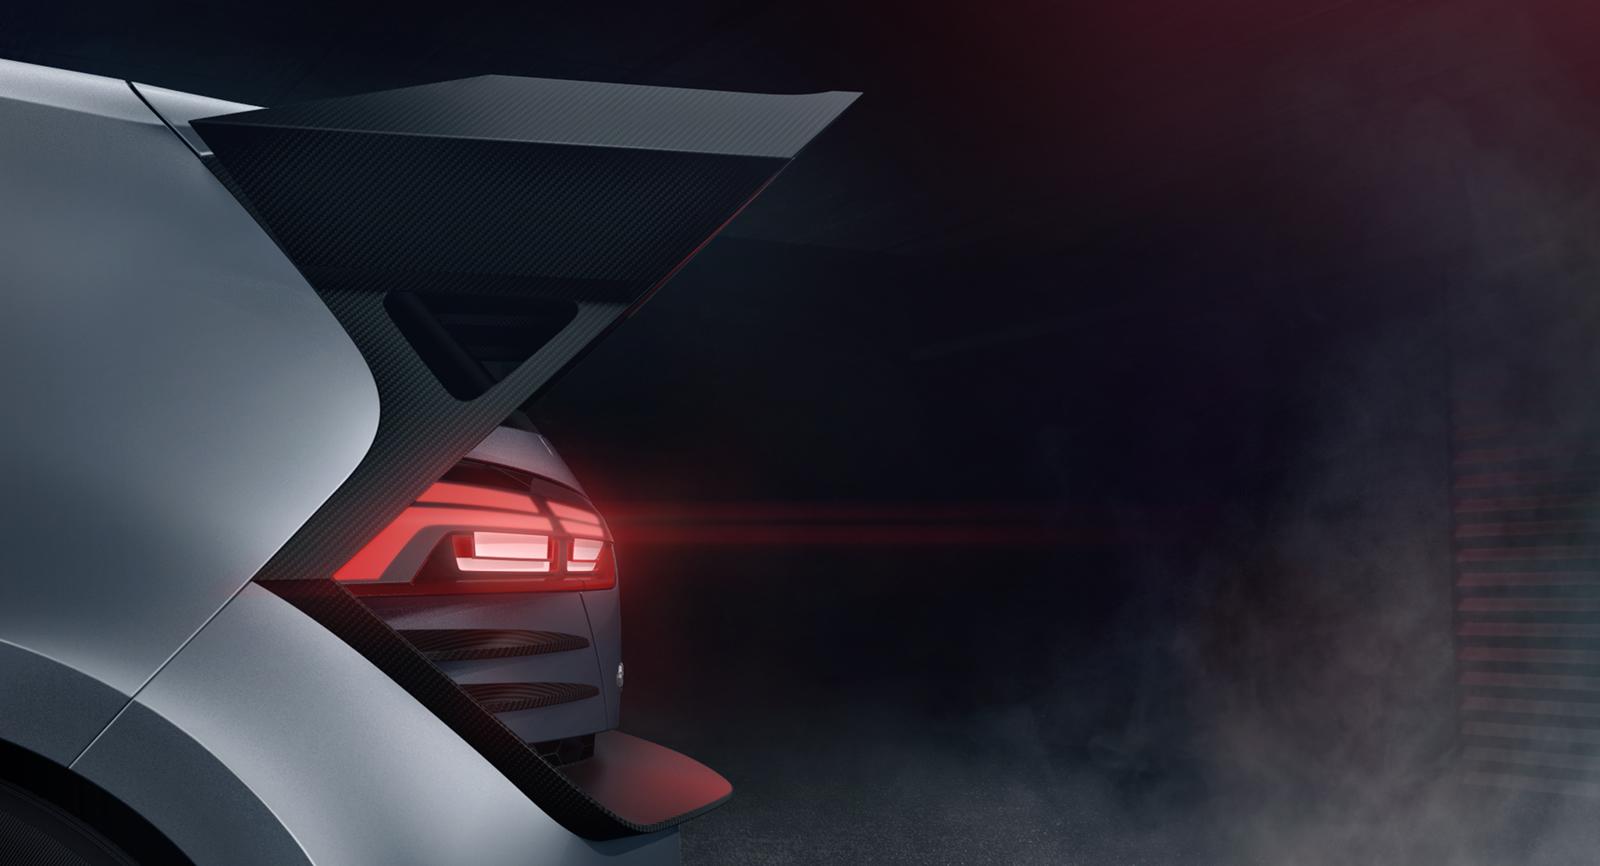 Volkswagen выпустил множество изображений и даже видео предстоящего GTI Supersport Vision GranTurismo Concept. Автомобиль сделан на основе GTI Roadster Vision Gran Turismo, который был представлен в прошлом году в гоночном симуляторе, Gran Turismo 6.